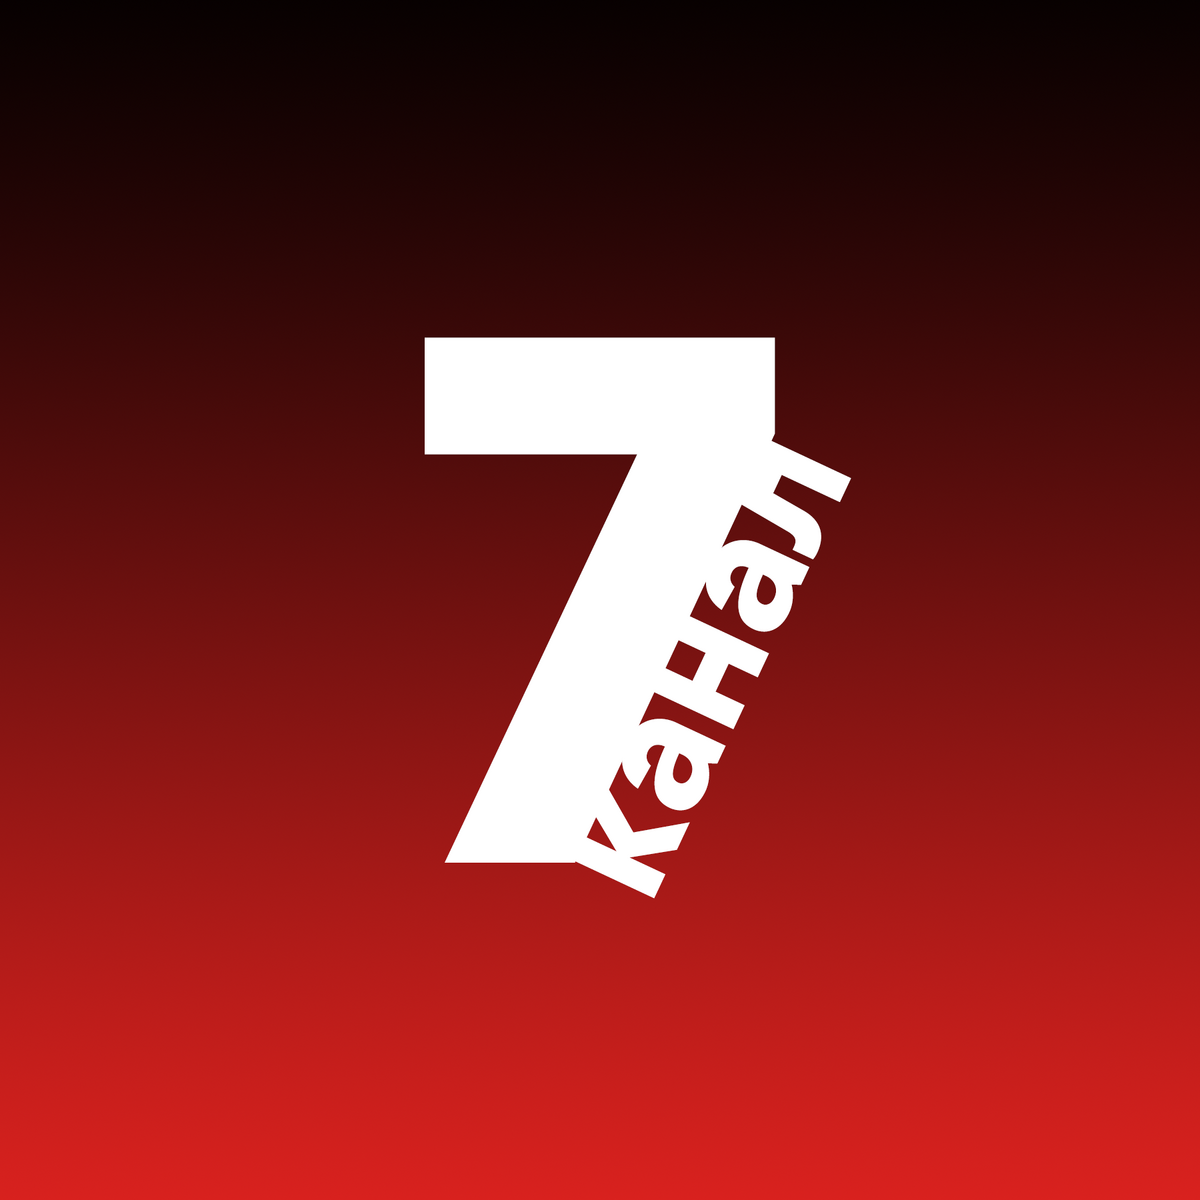 Seven tv. 7 Канал. 7 Канал логотип. 7тв логотип. 7тв канал.